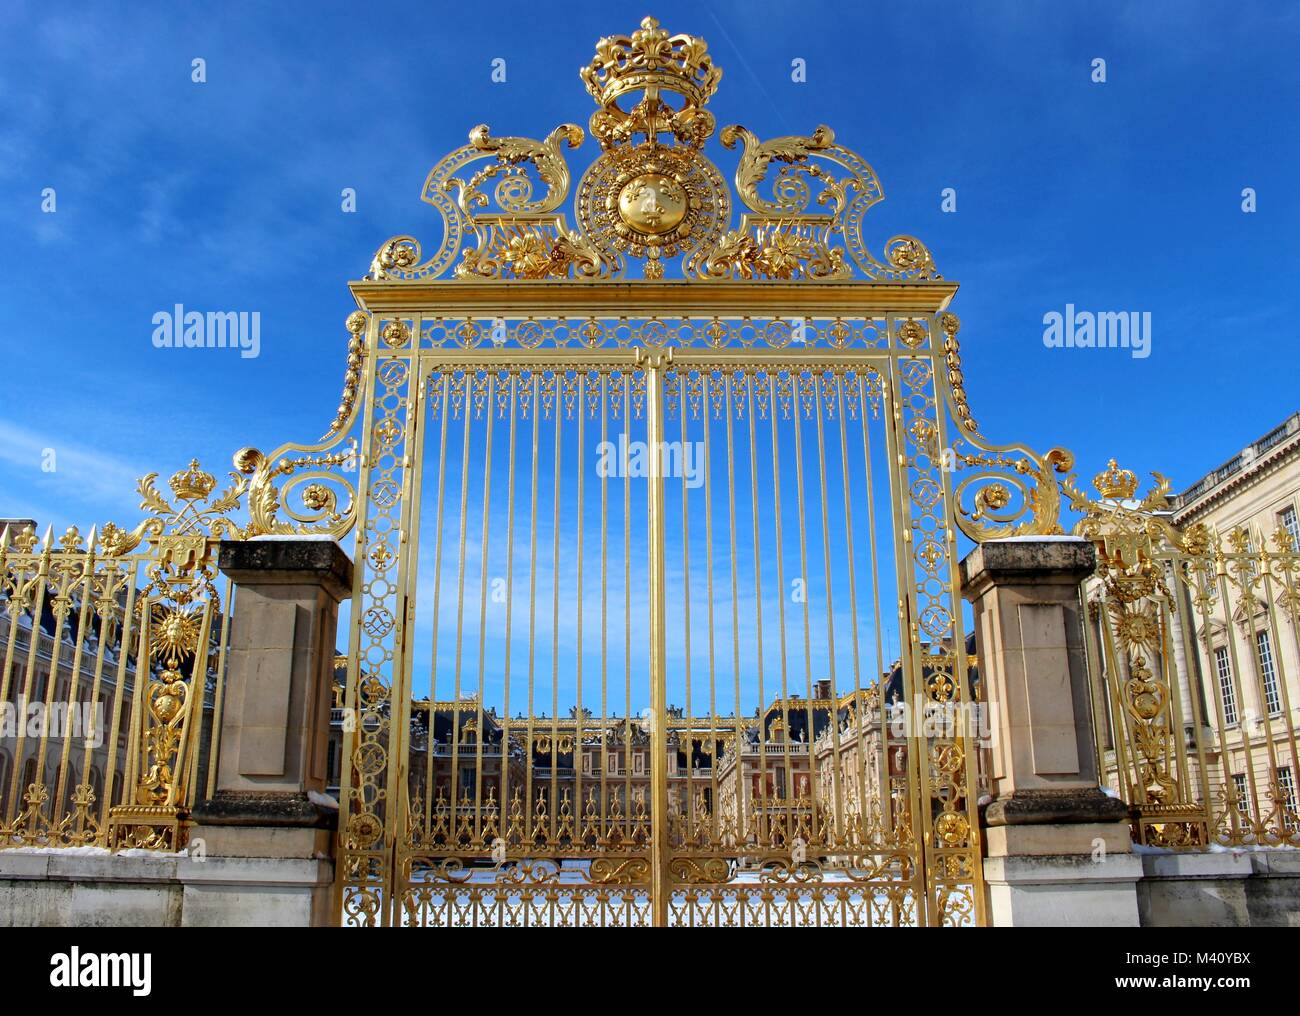 Le royal Portes de Versailles, qui ont été démolis au cours de la Révolution française, ont été recréées à l'aide d'un 100 000 feuilles d'or. Banque D'Images